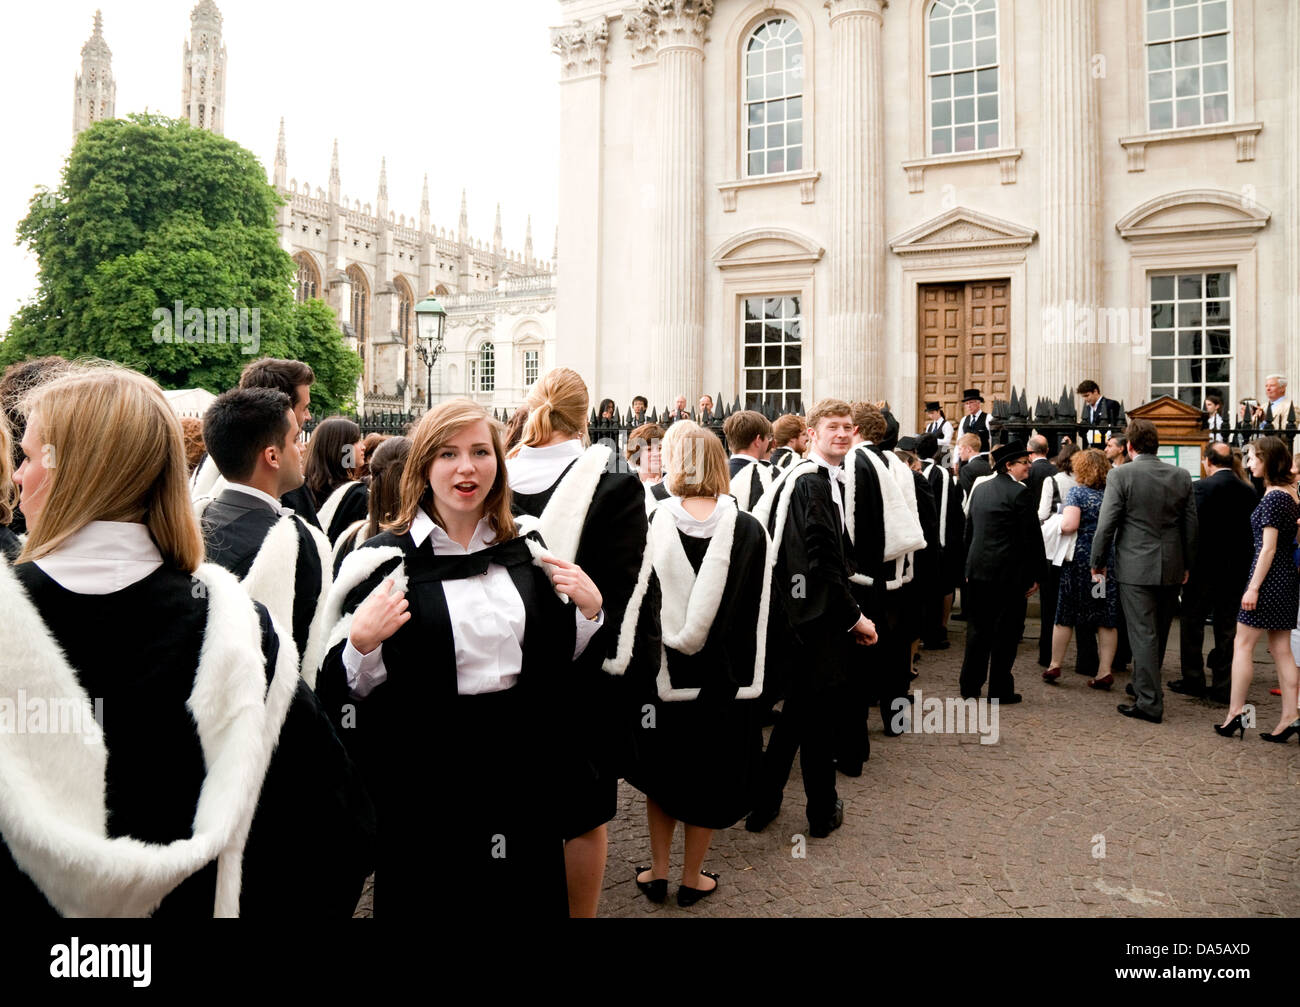 University Education UK; Cambridge University Students Graduation Day. Absolventen in Kleidern, die am Senate House, Cambridge, Großbritannien, ihren Abschluss machen Stockfoto